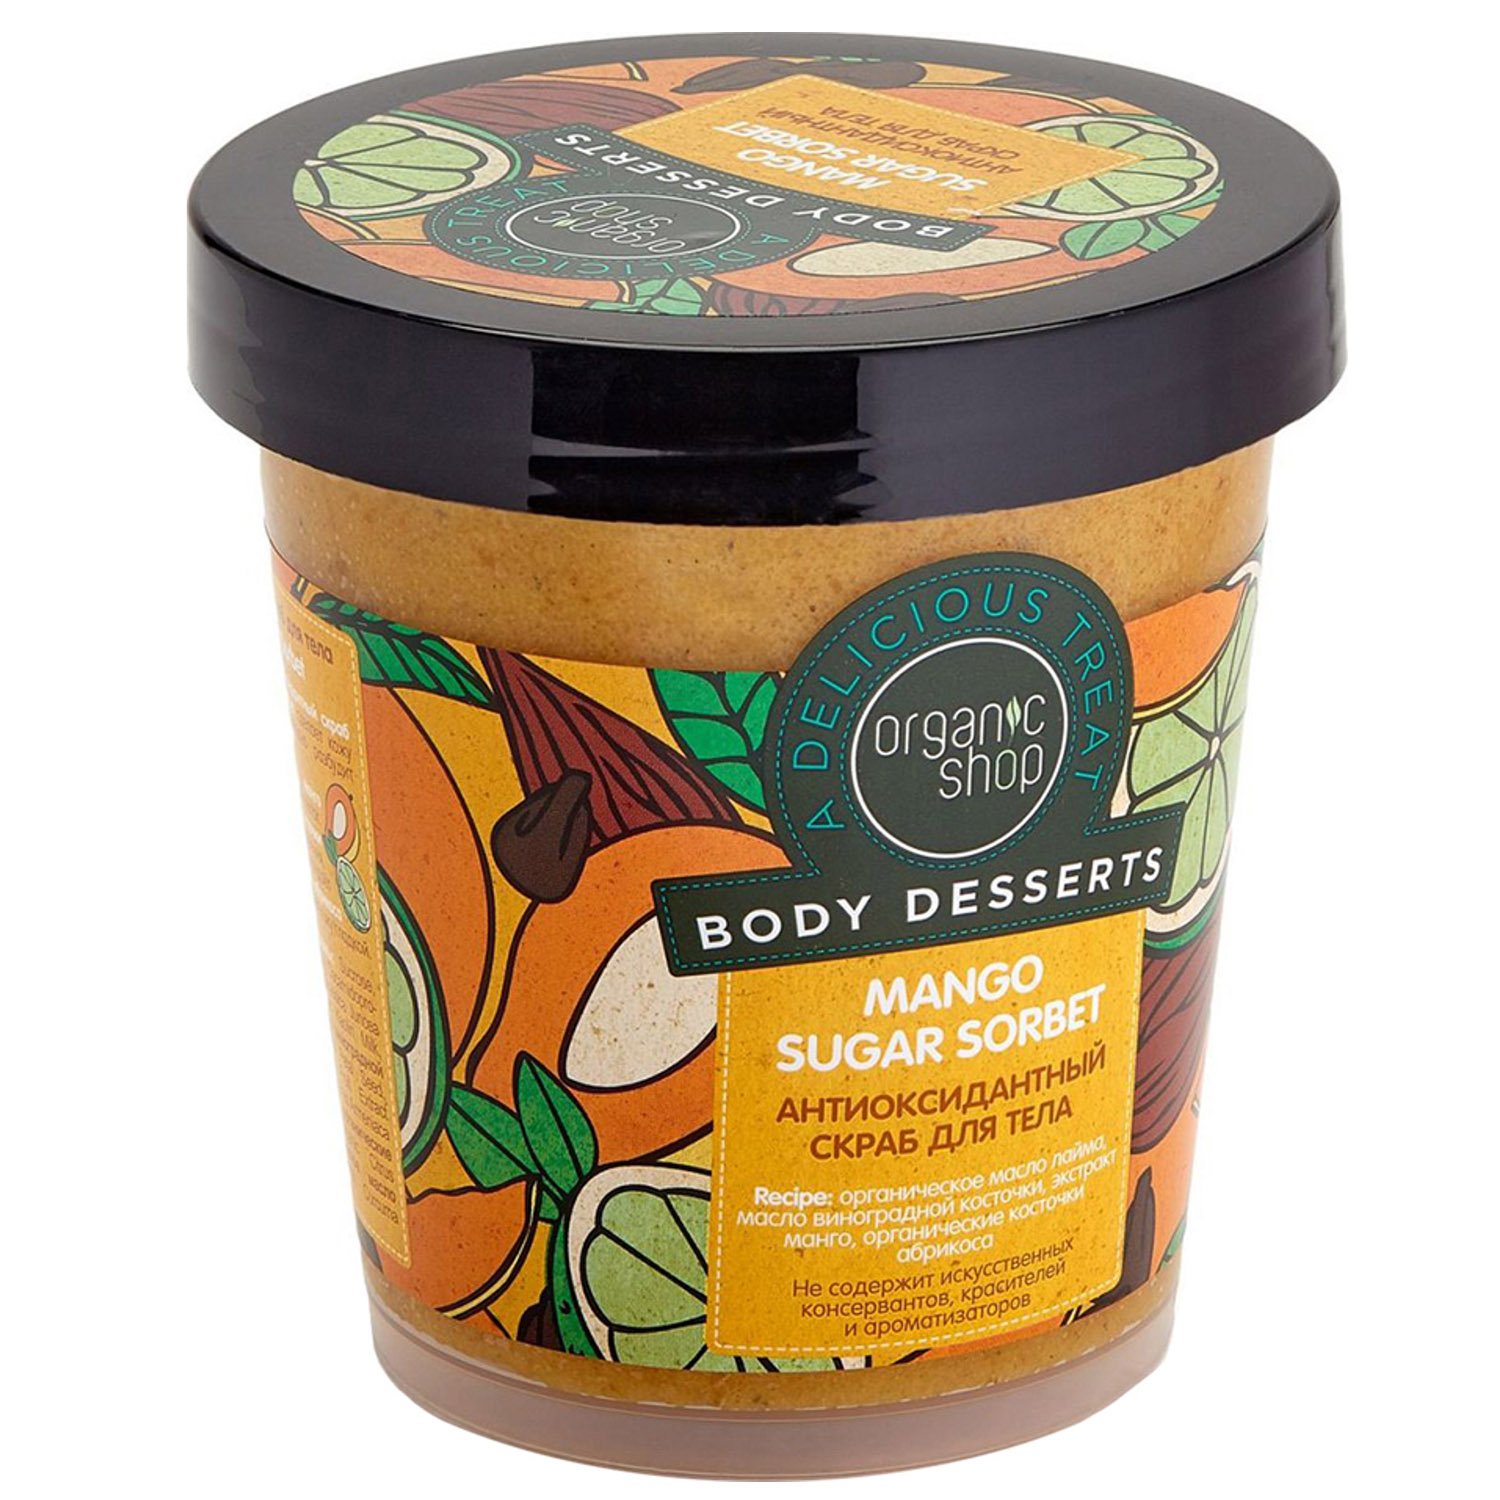 Скраб для тела Organic Shop Body Desserts Mango Sugar Sorbet антиоксидантный 450 мл - фото 1